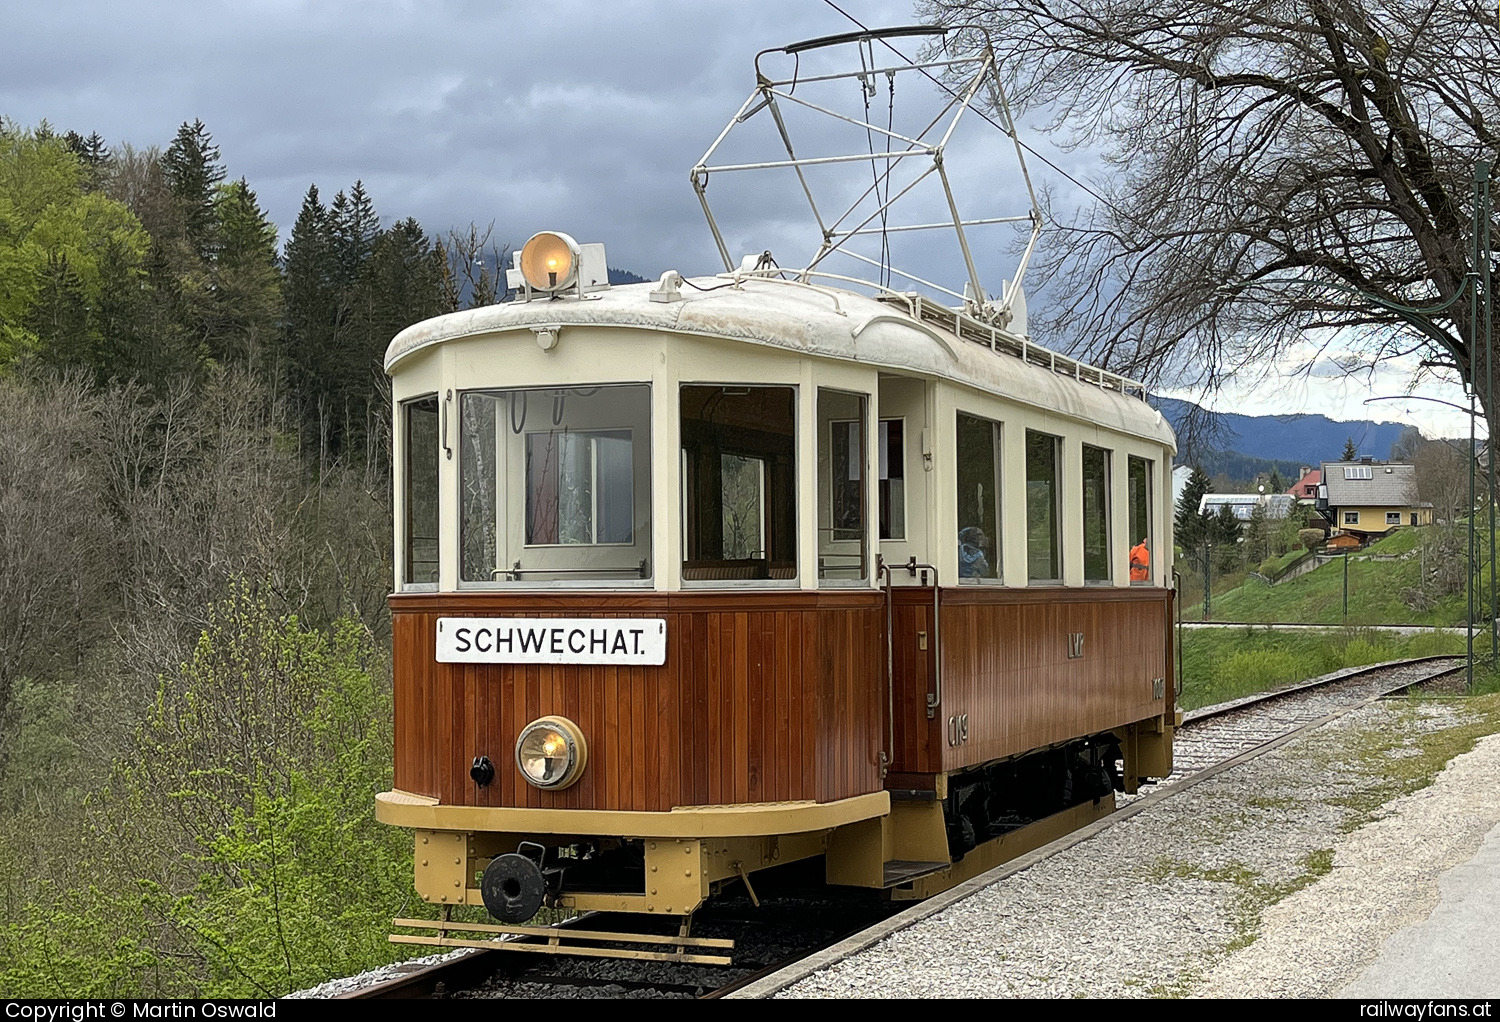 Museumstramway Mariazell Cmg 1607 in Mariazell Promenadenweg - Herkunft: Preßburger Bahn, Baujahr 1912   Railwayfans